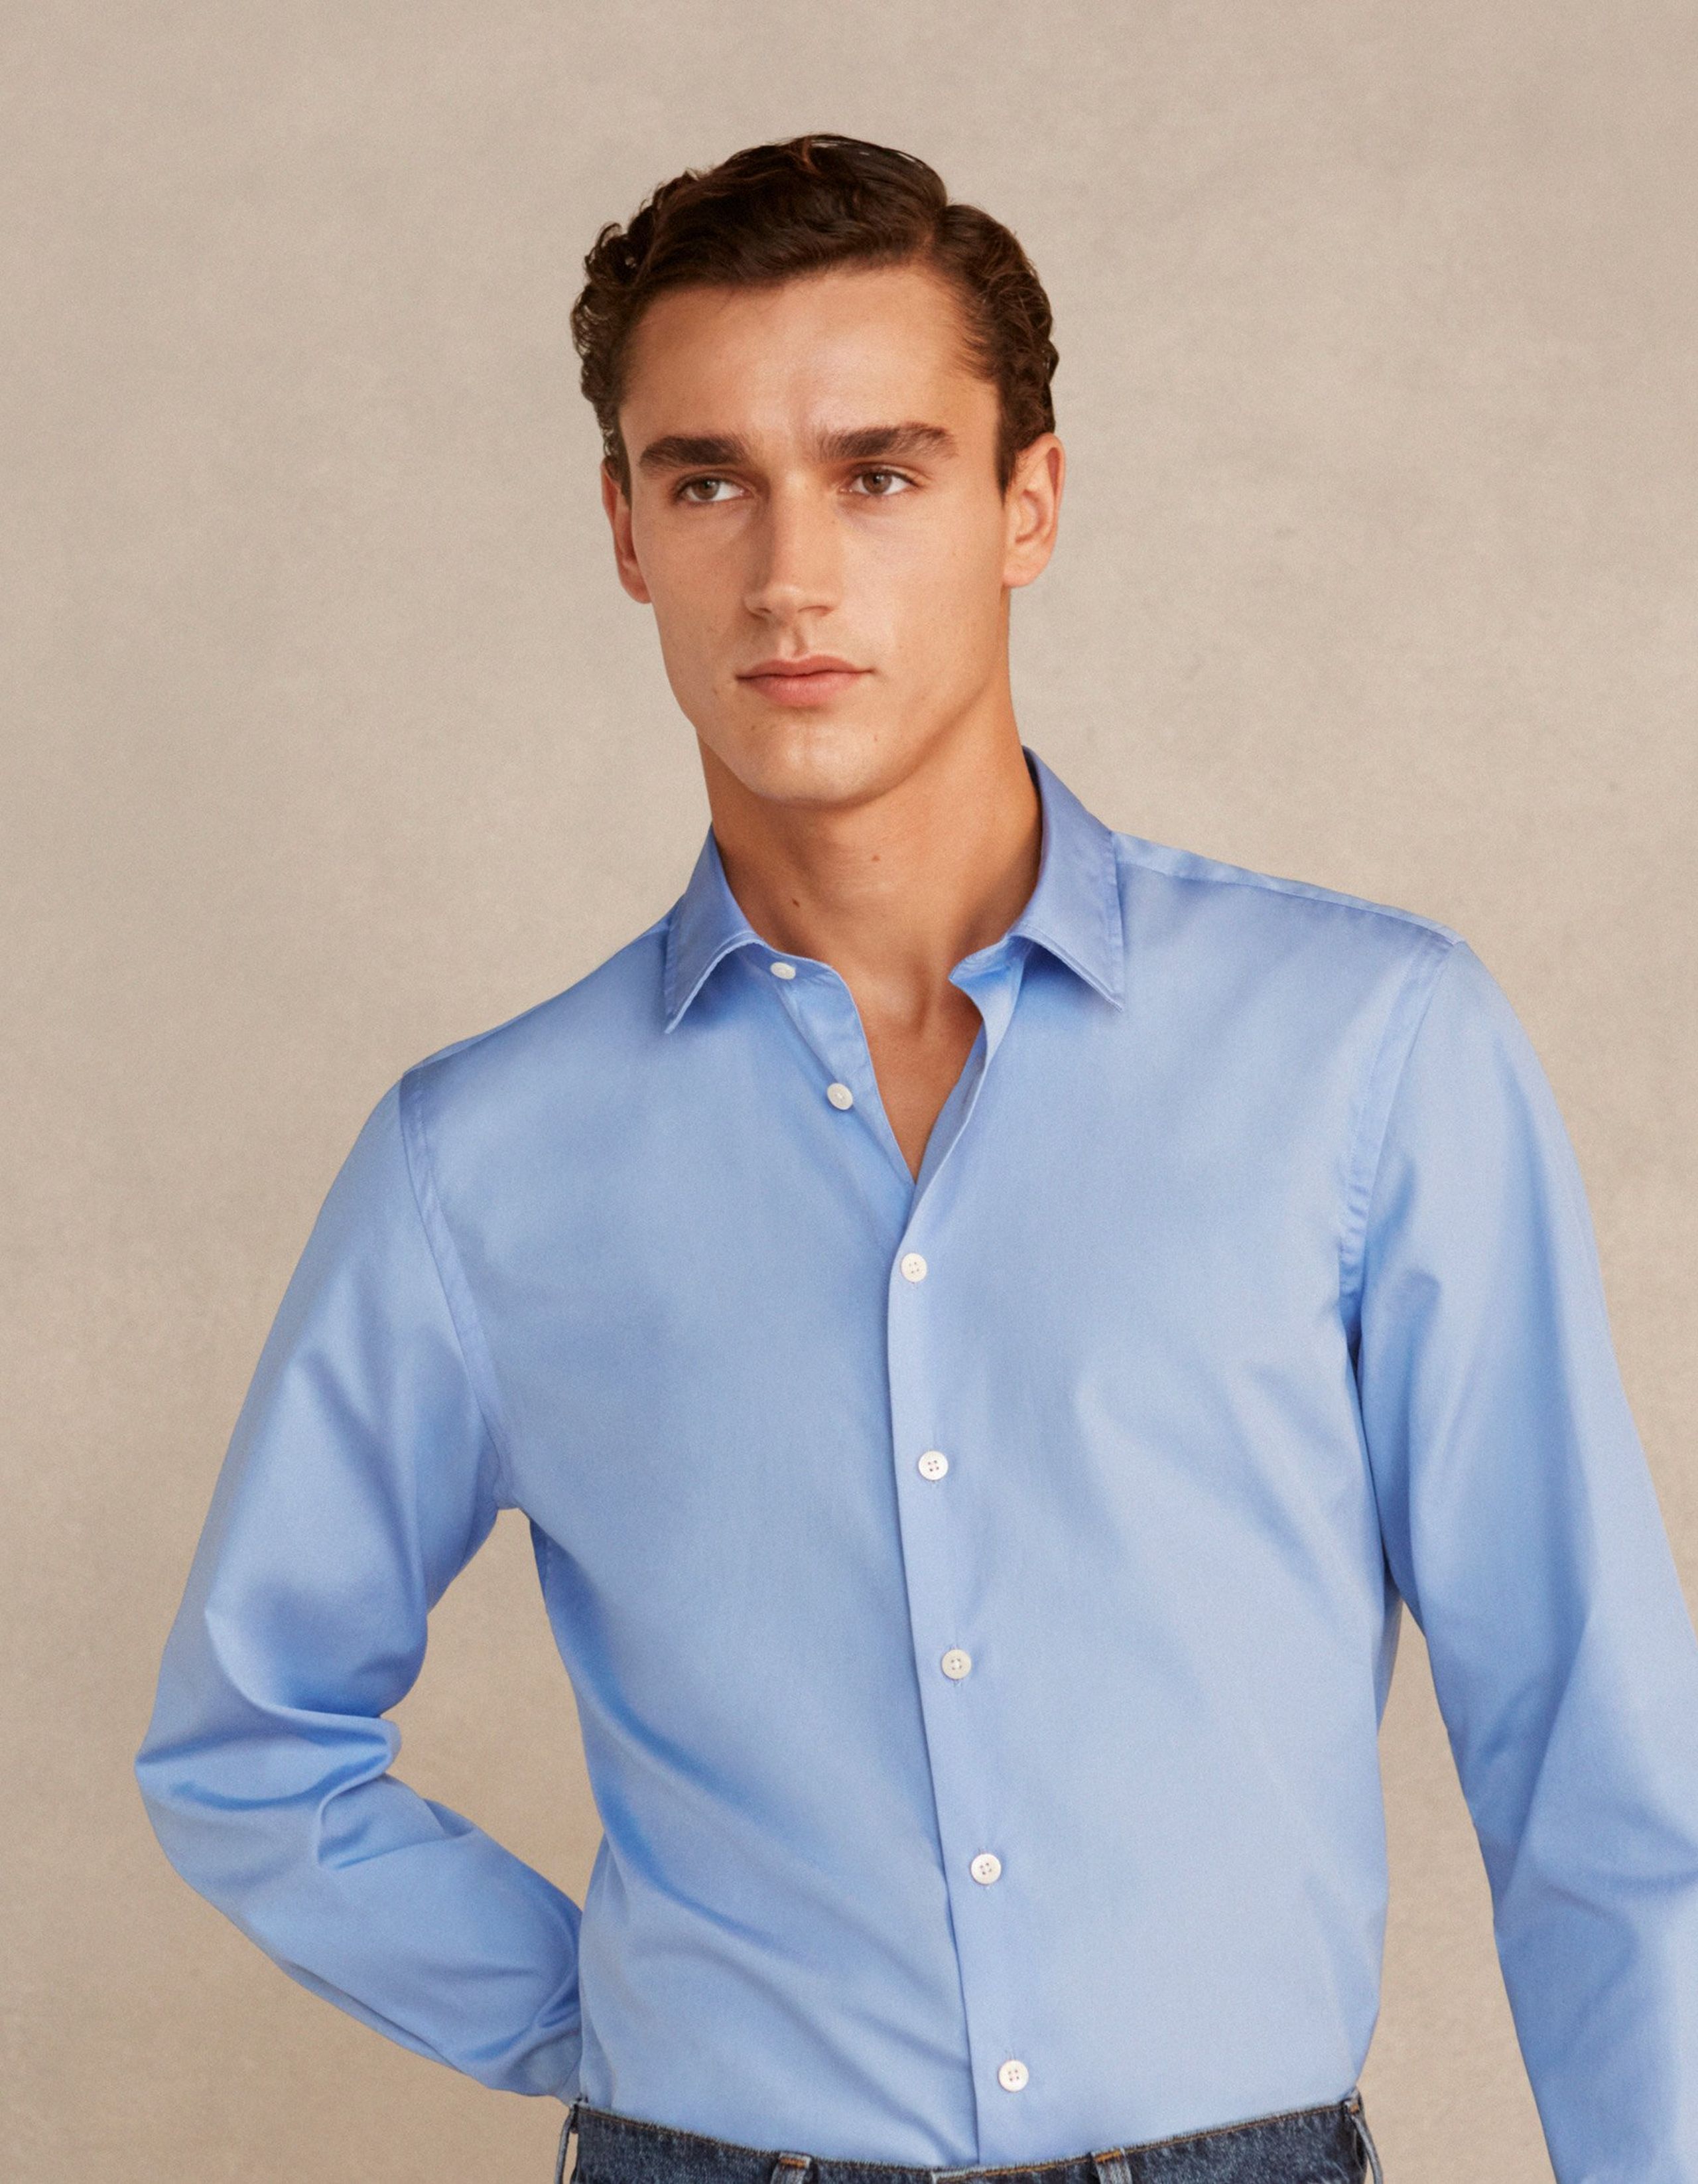 A man wears a blue formal shirt